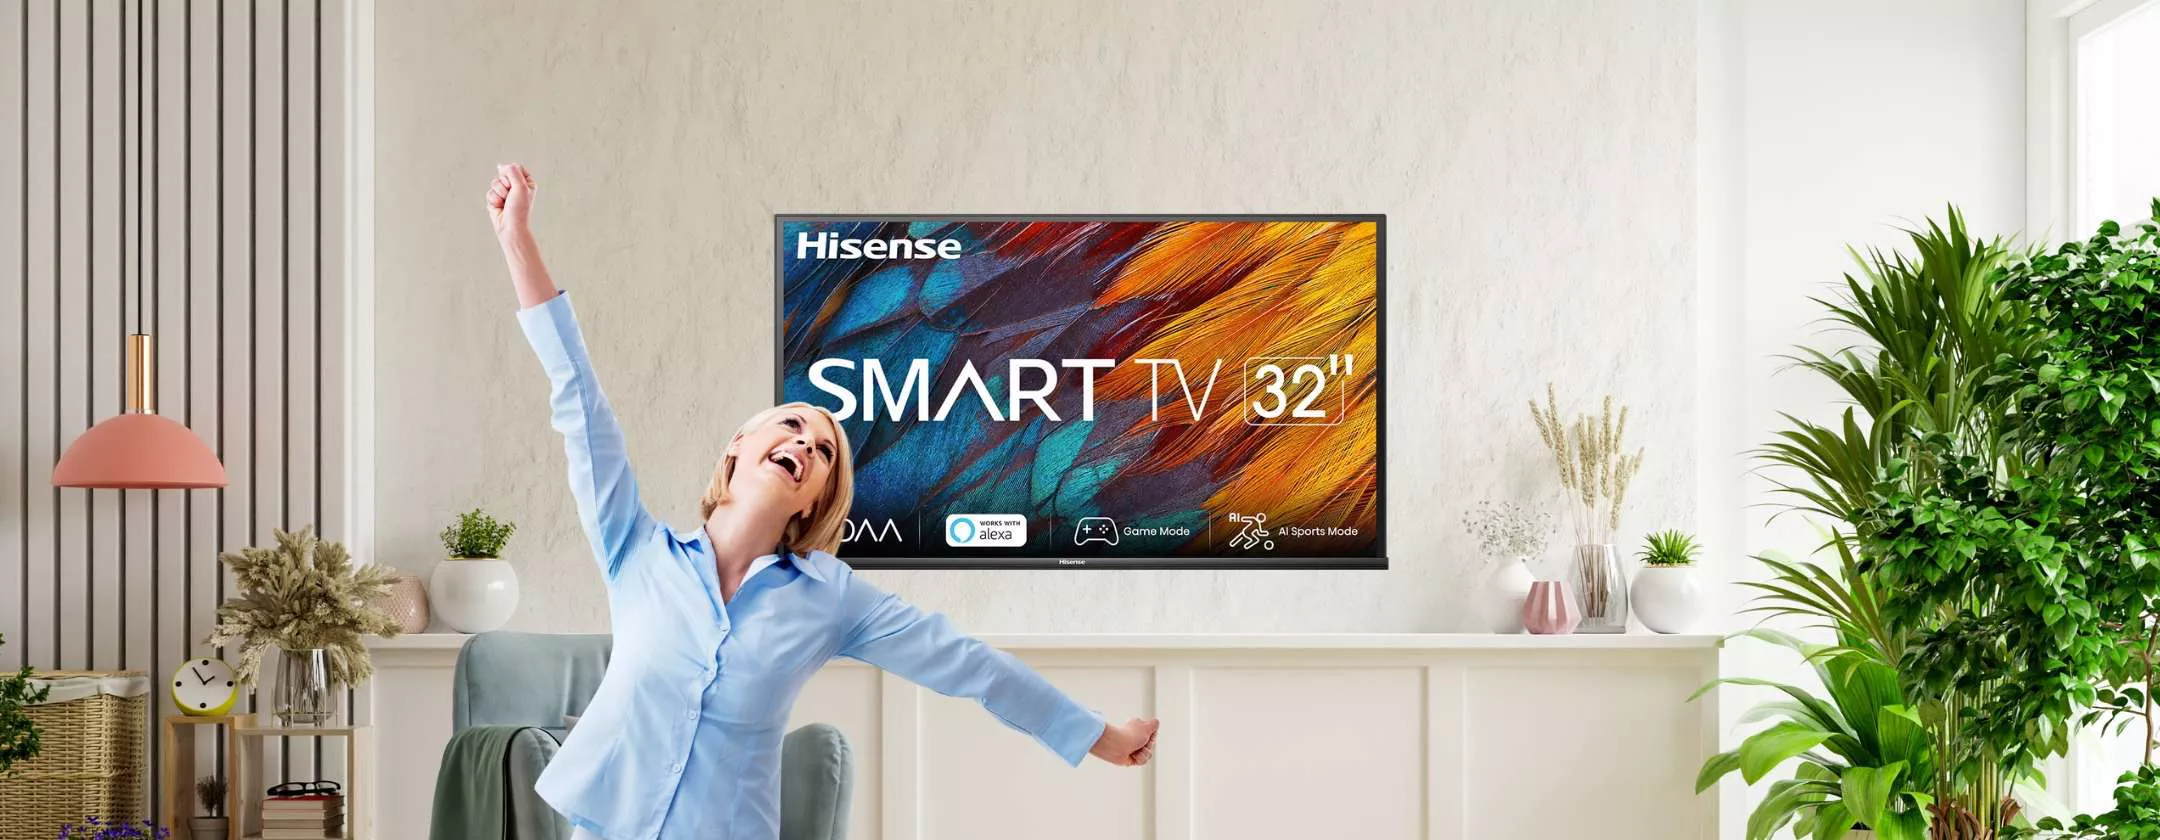 Smart TV Hisense 32 a 179€: scegli Unieuro, anche a Tasso Zero